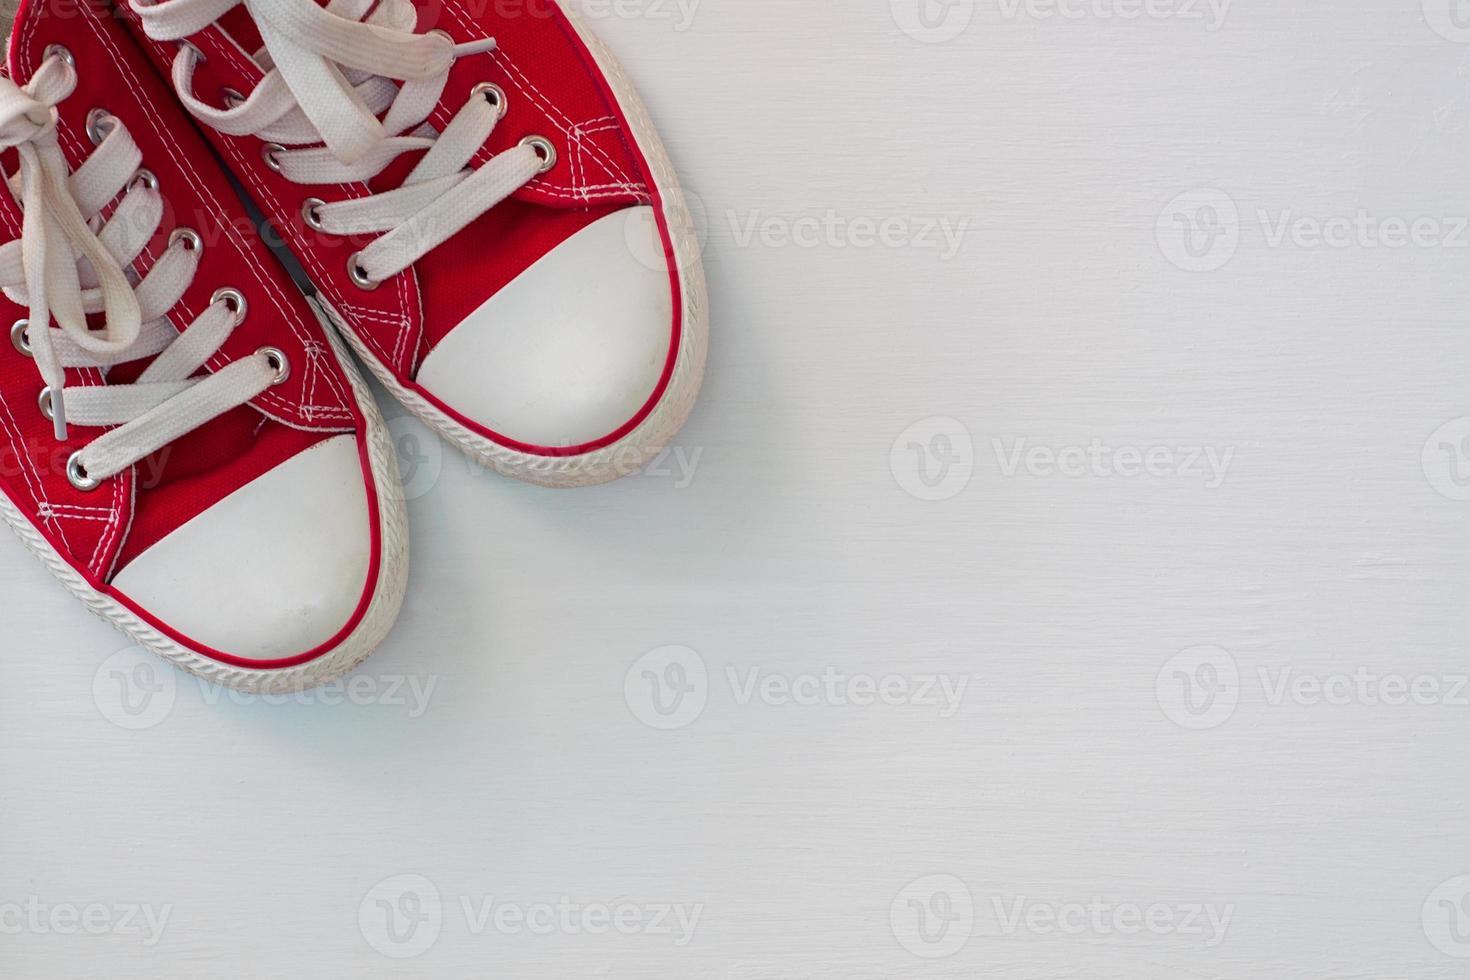 par de zapatillas rojas juveniles sobre una superficie de madera blanca foto